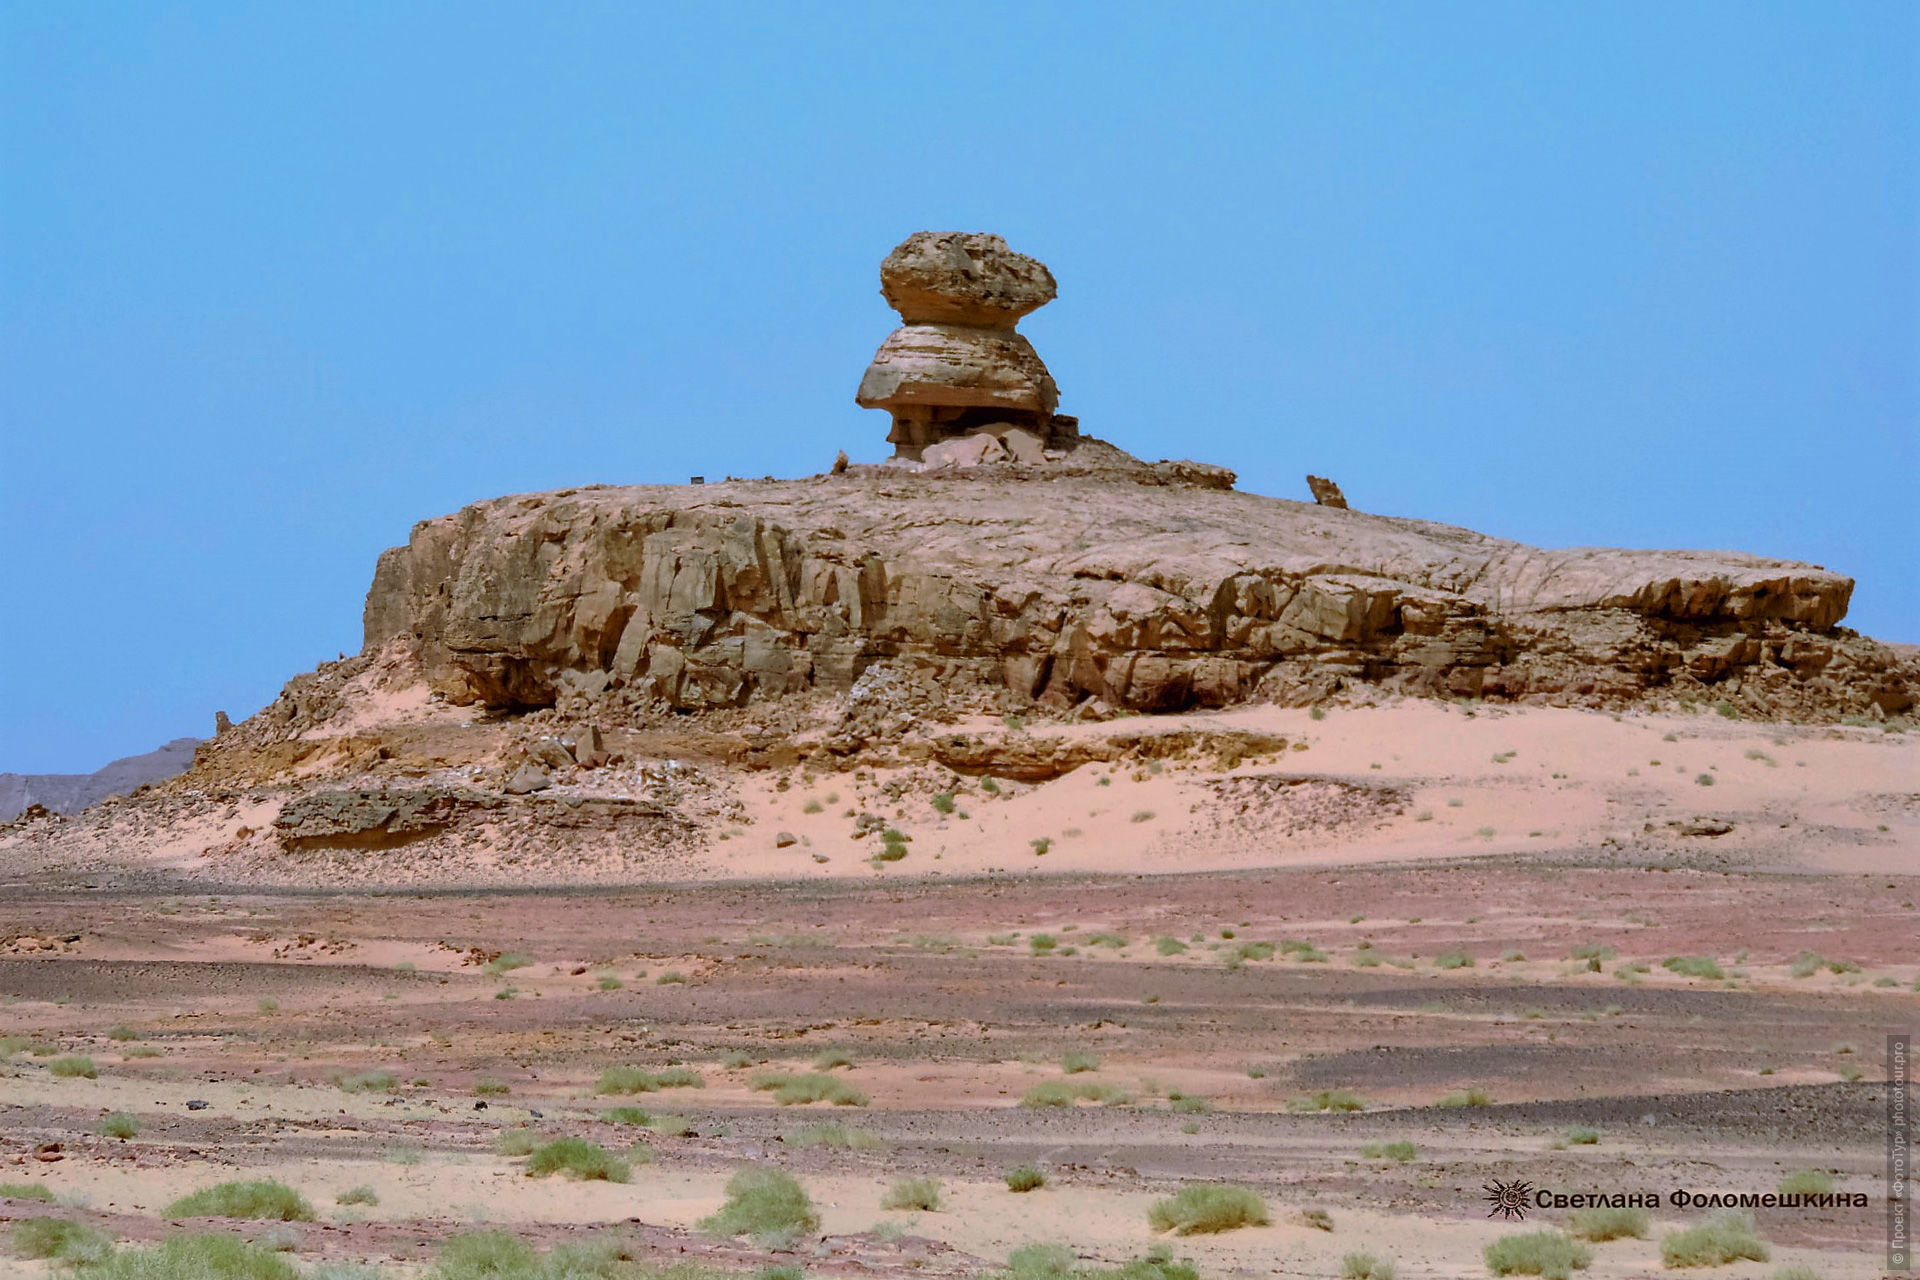 Каменный грию Джебель Эль Мукабер, приключенческий фототур/тур пустыни и горы Синая, Египет, 27 ноября - 8 декабря 2021 года.